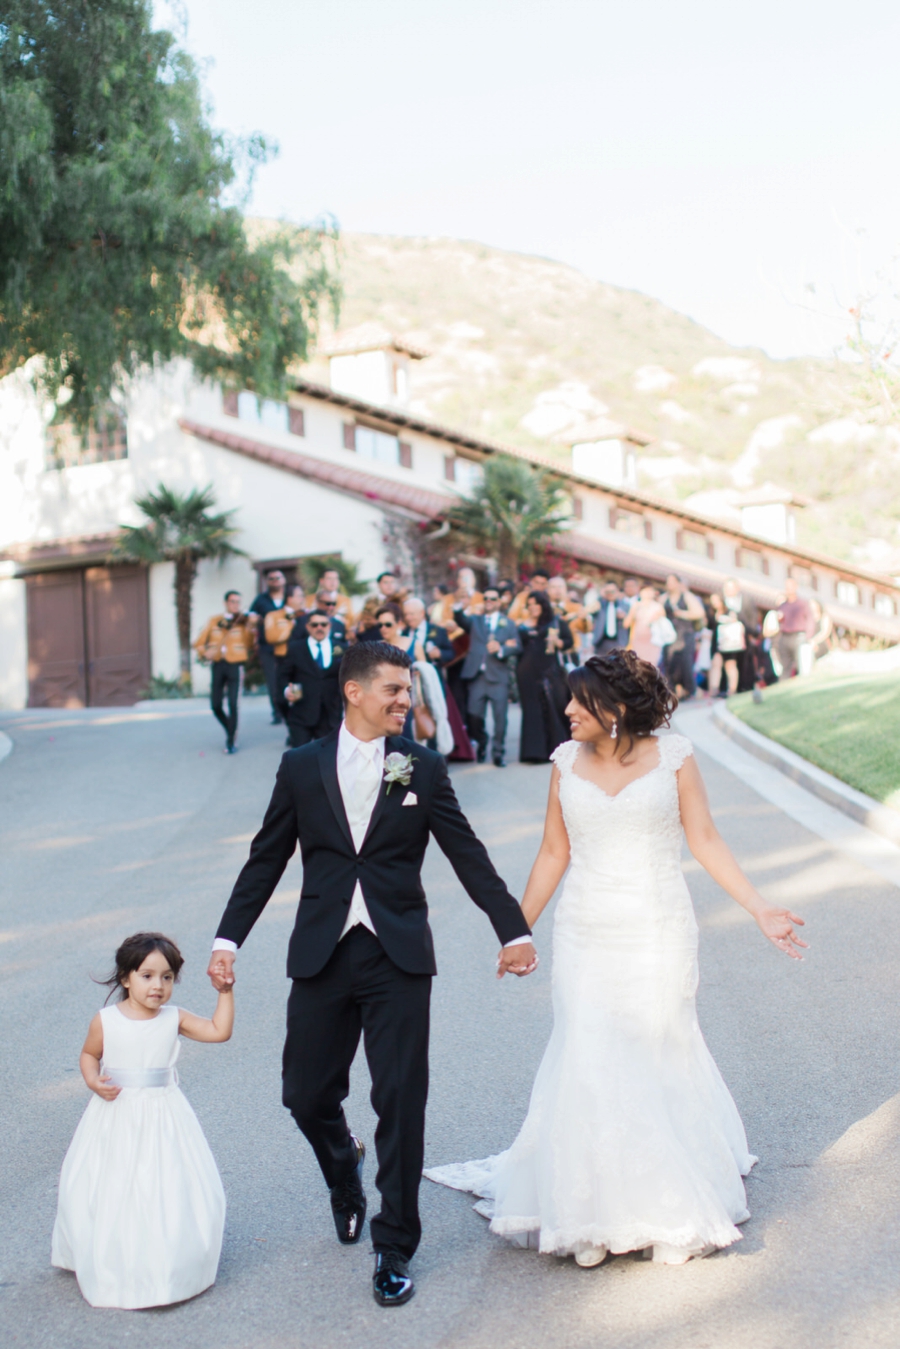 A Fun & Romantic Los Angeles Wedding via TheELD.com